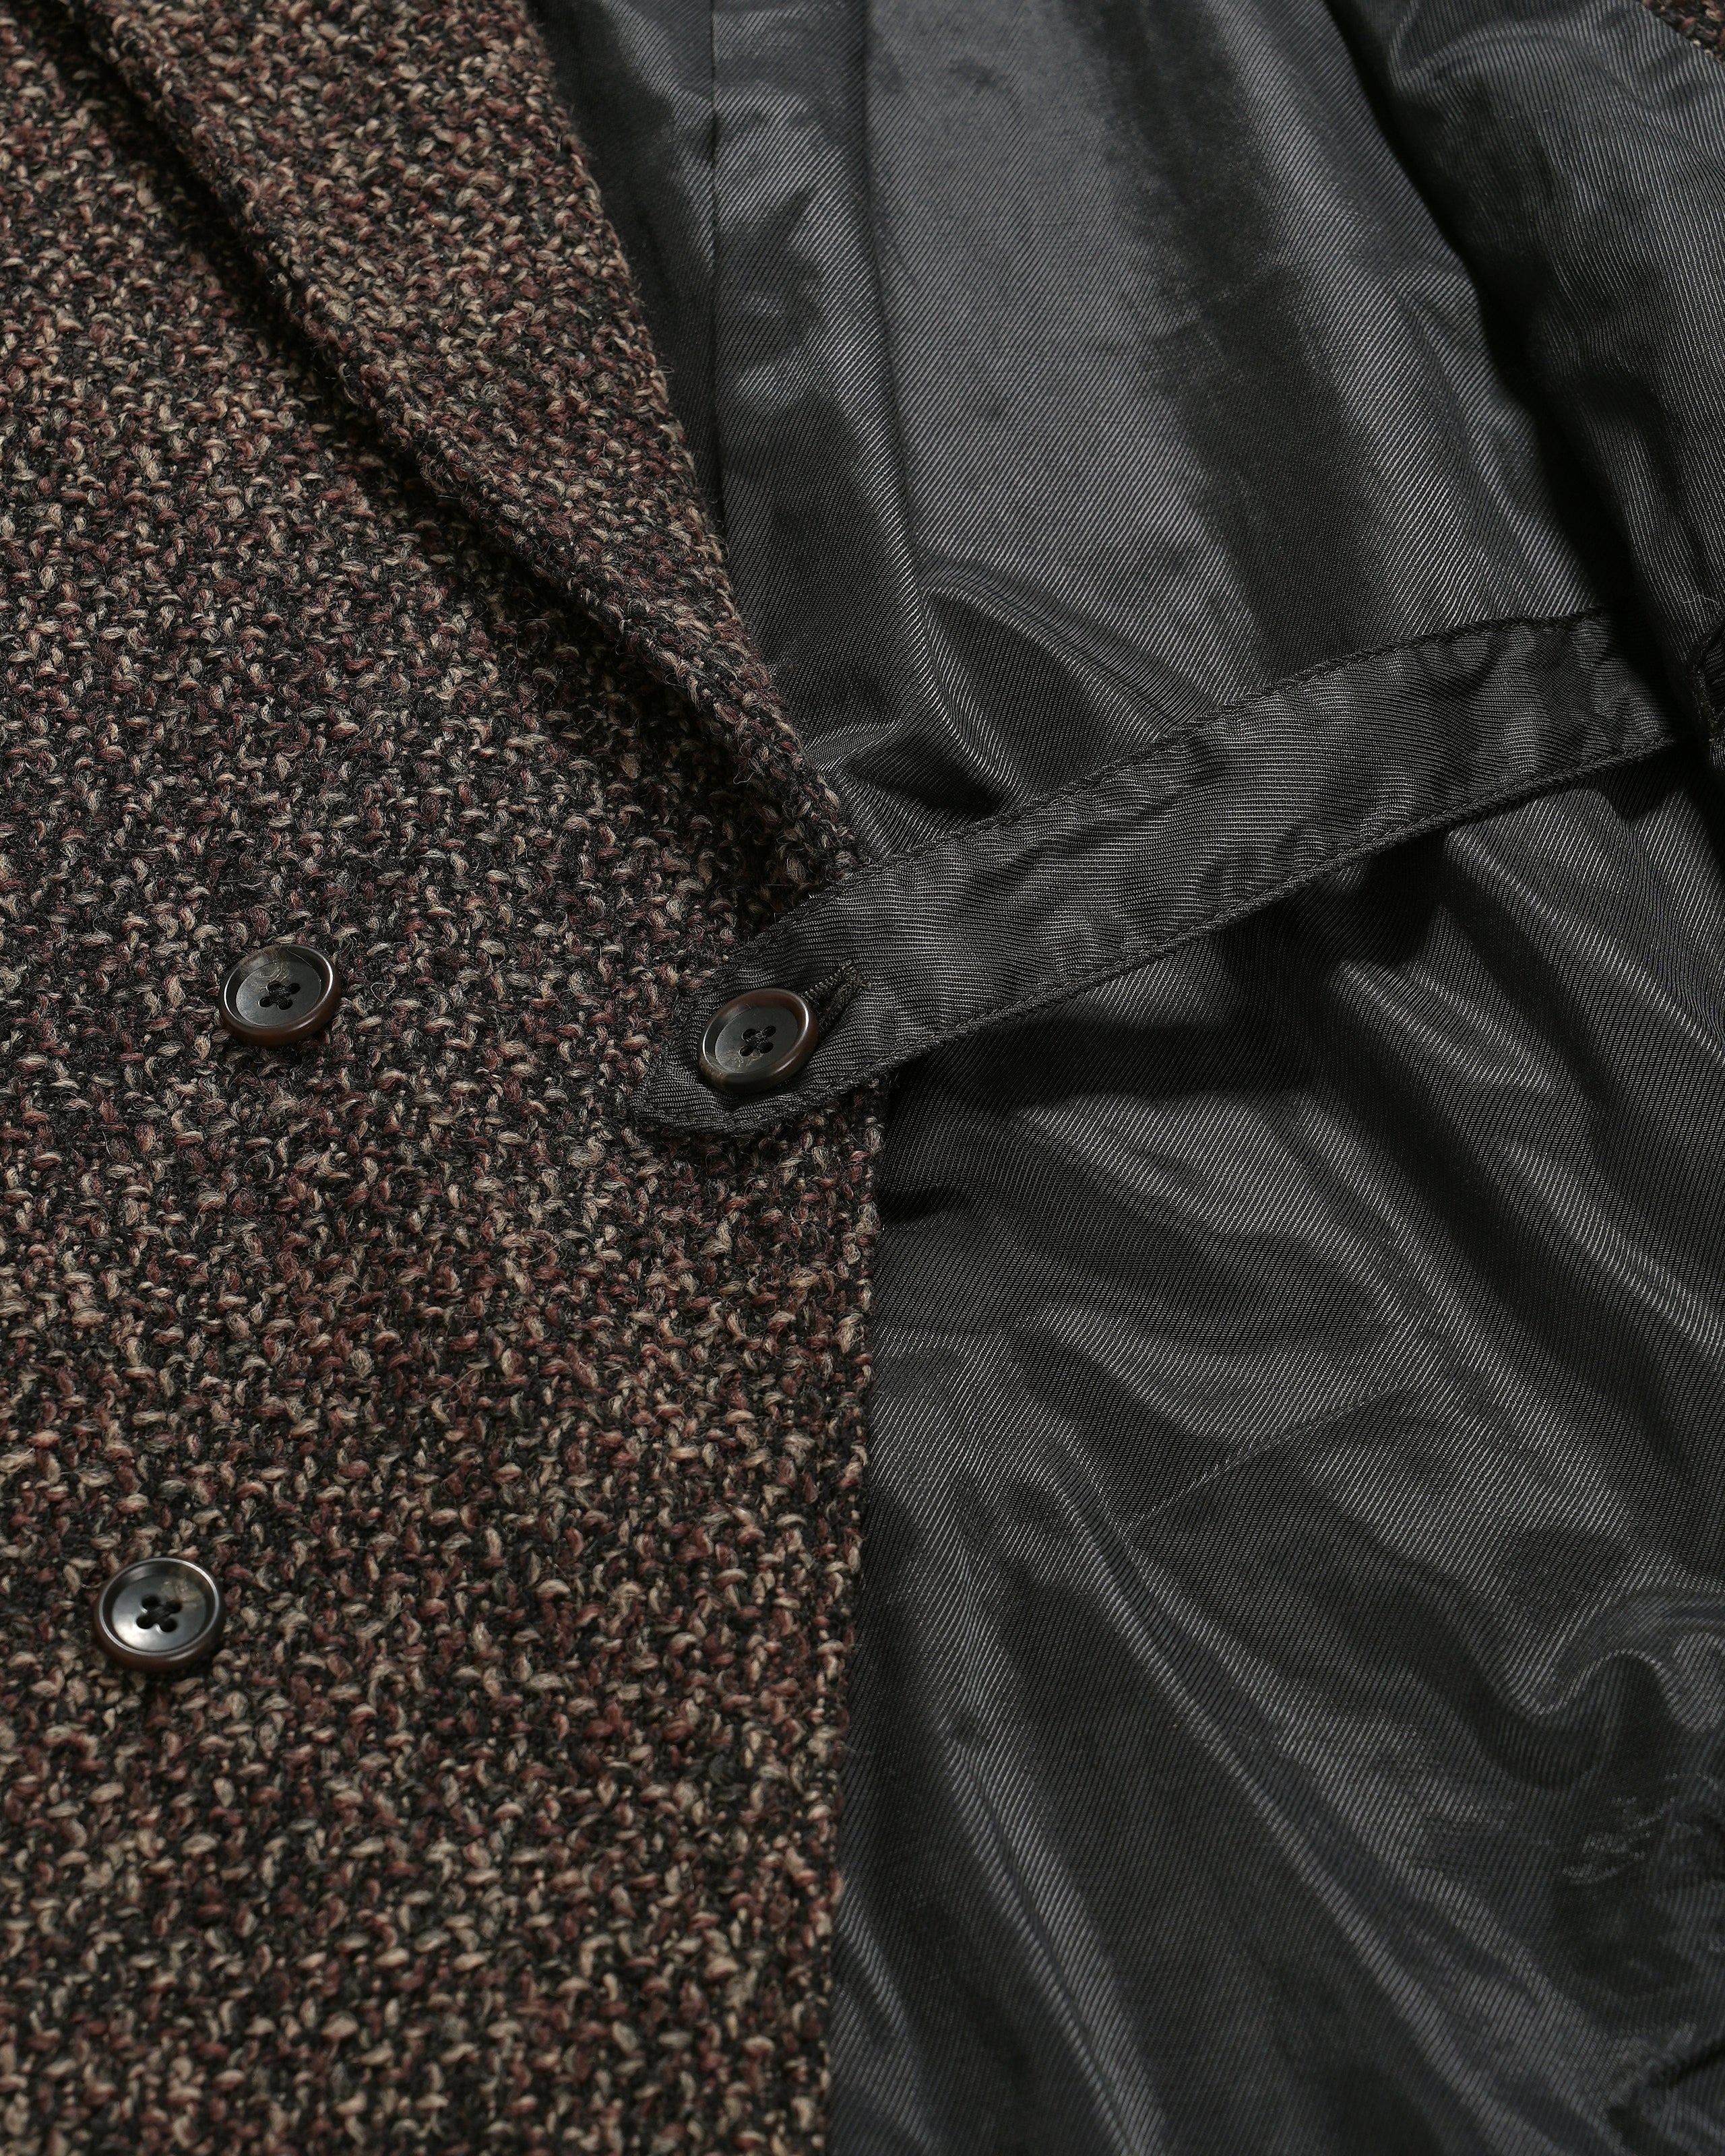 DB Jacket - Dk. Brown Polyester Wool Tweed Boucle